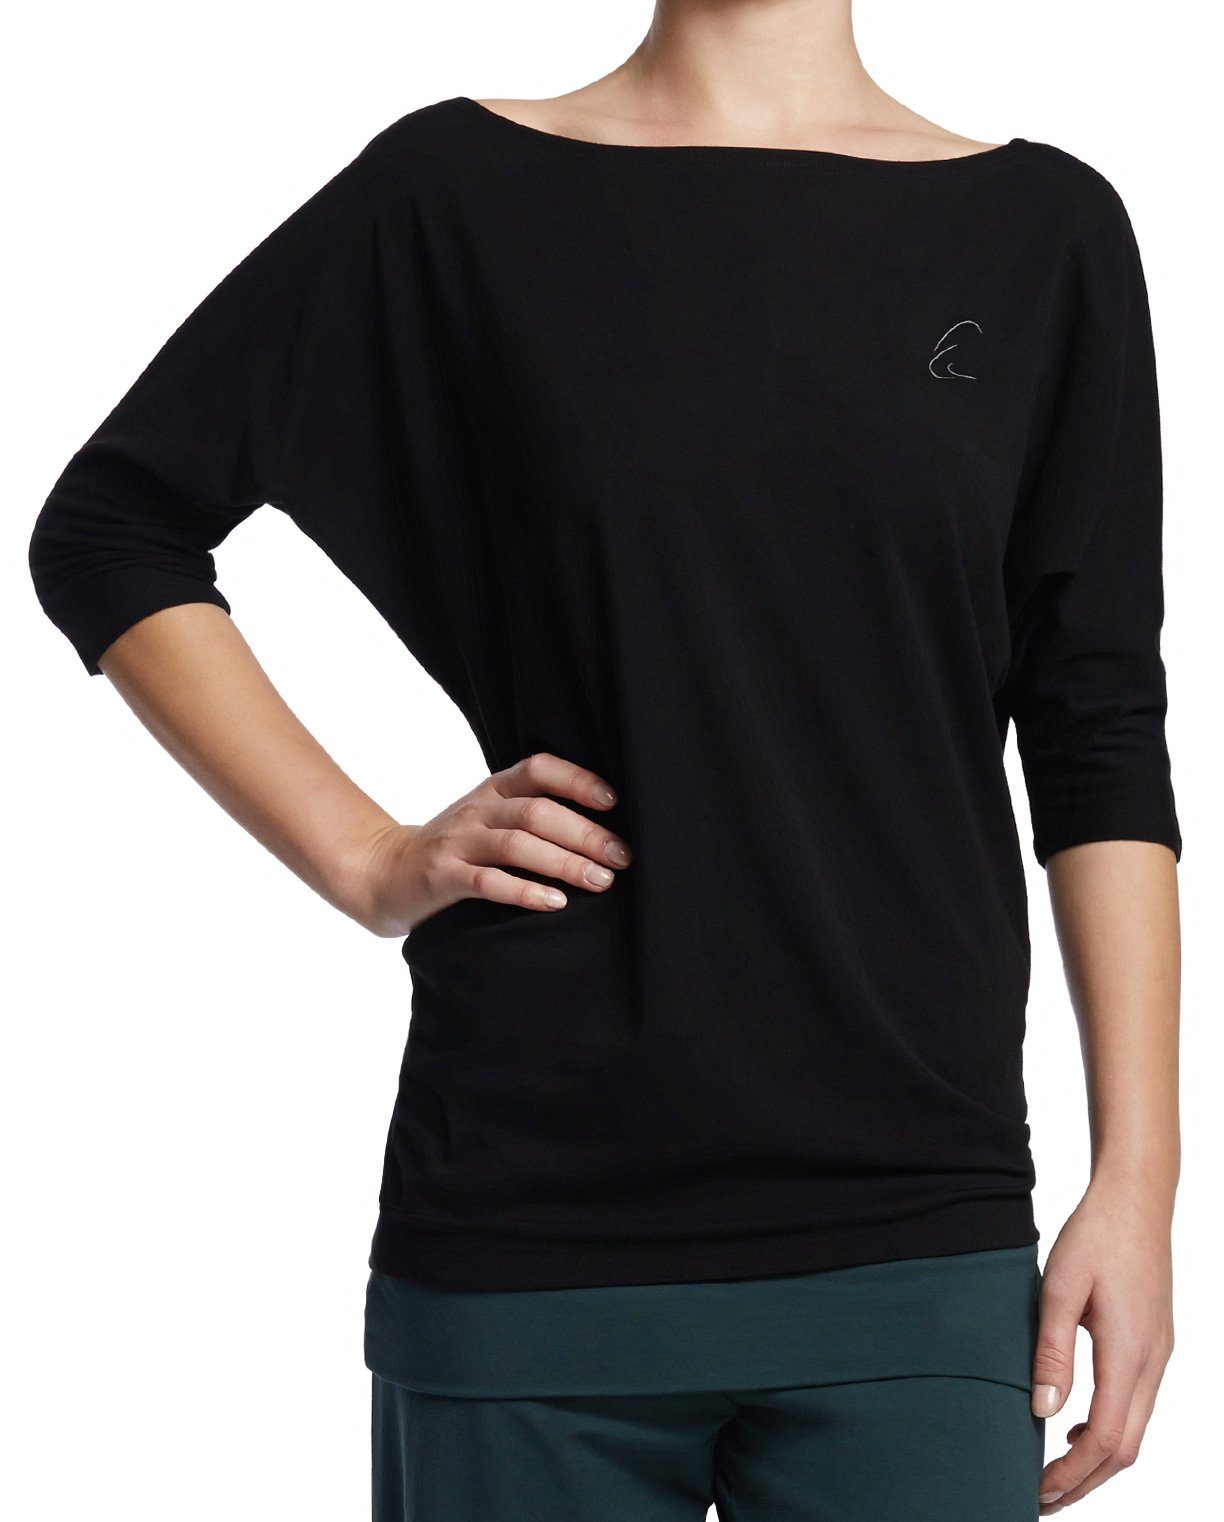 Neueste Kollektionen beliebter Marken ESPARTO Yogashirt Halbarmshirt Sadaa in Bio-Baumwolle Schwarz mit Wohlfühlshirt (U-Boot-Ausschnitt) breitem Schulterausschnitt